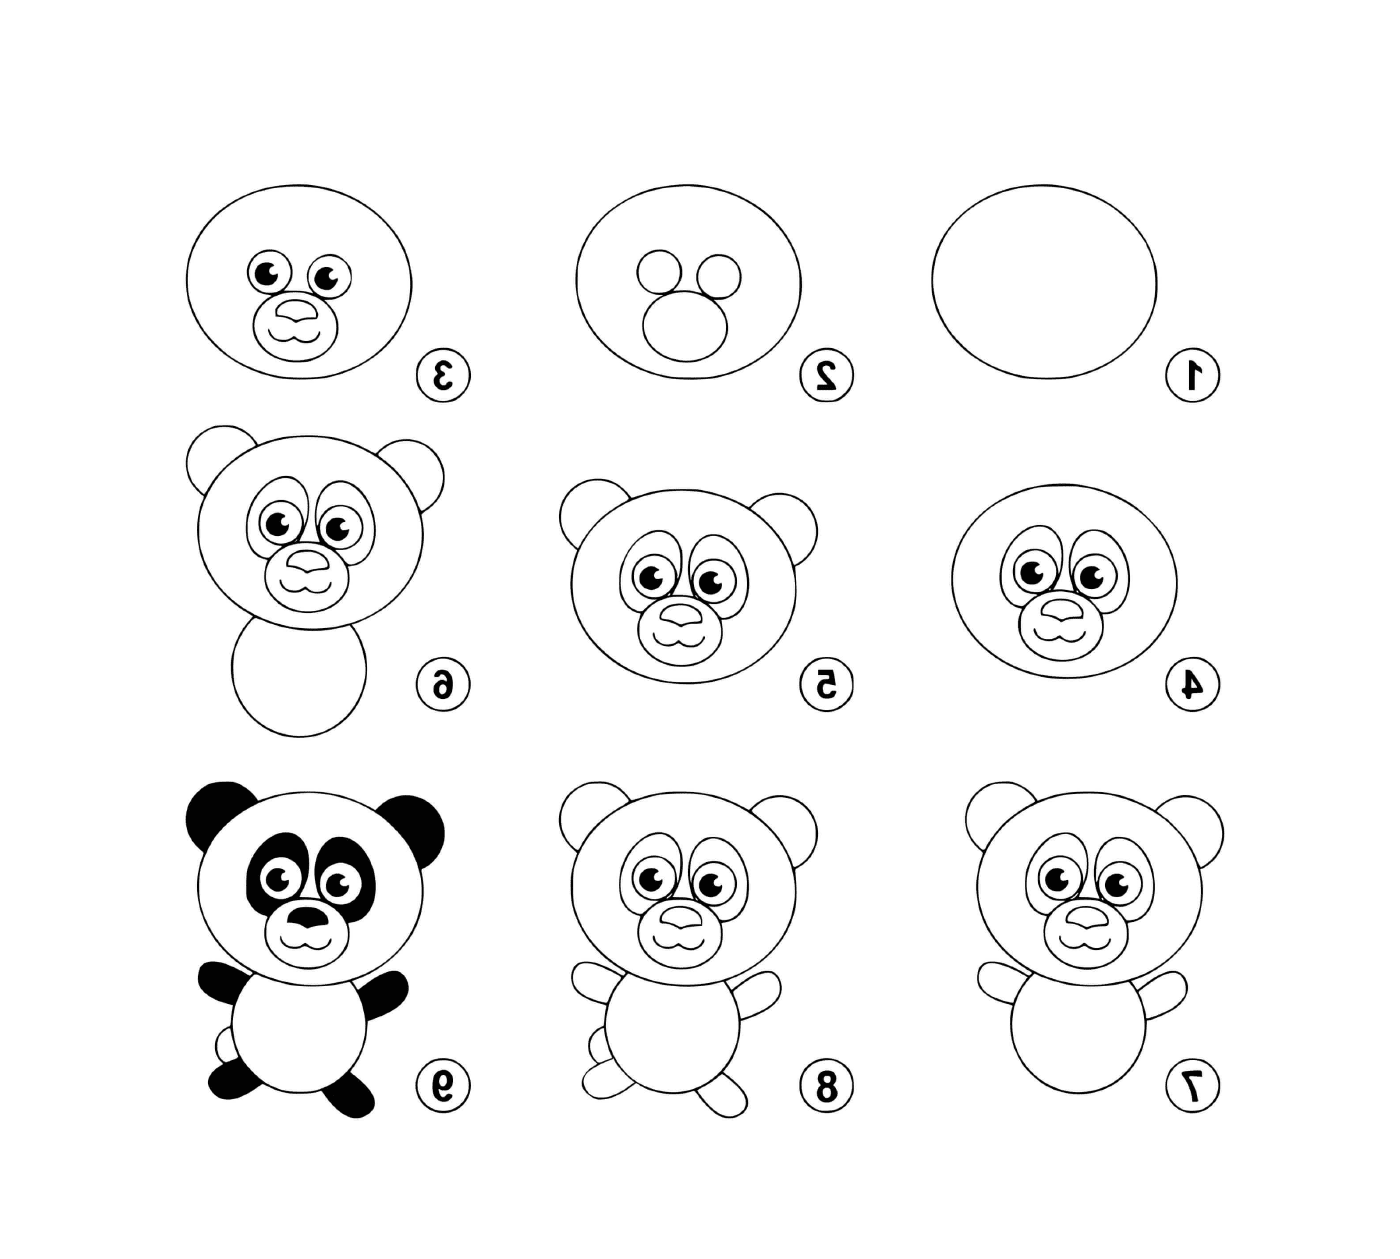  Fácil, desenhe um panda 